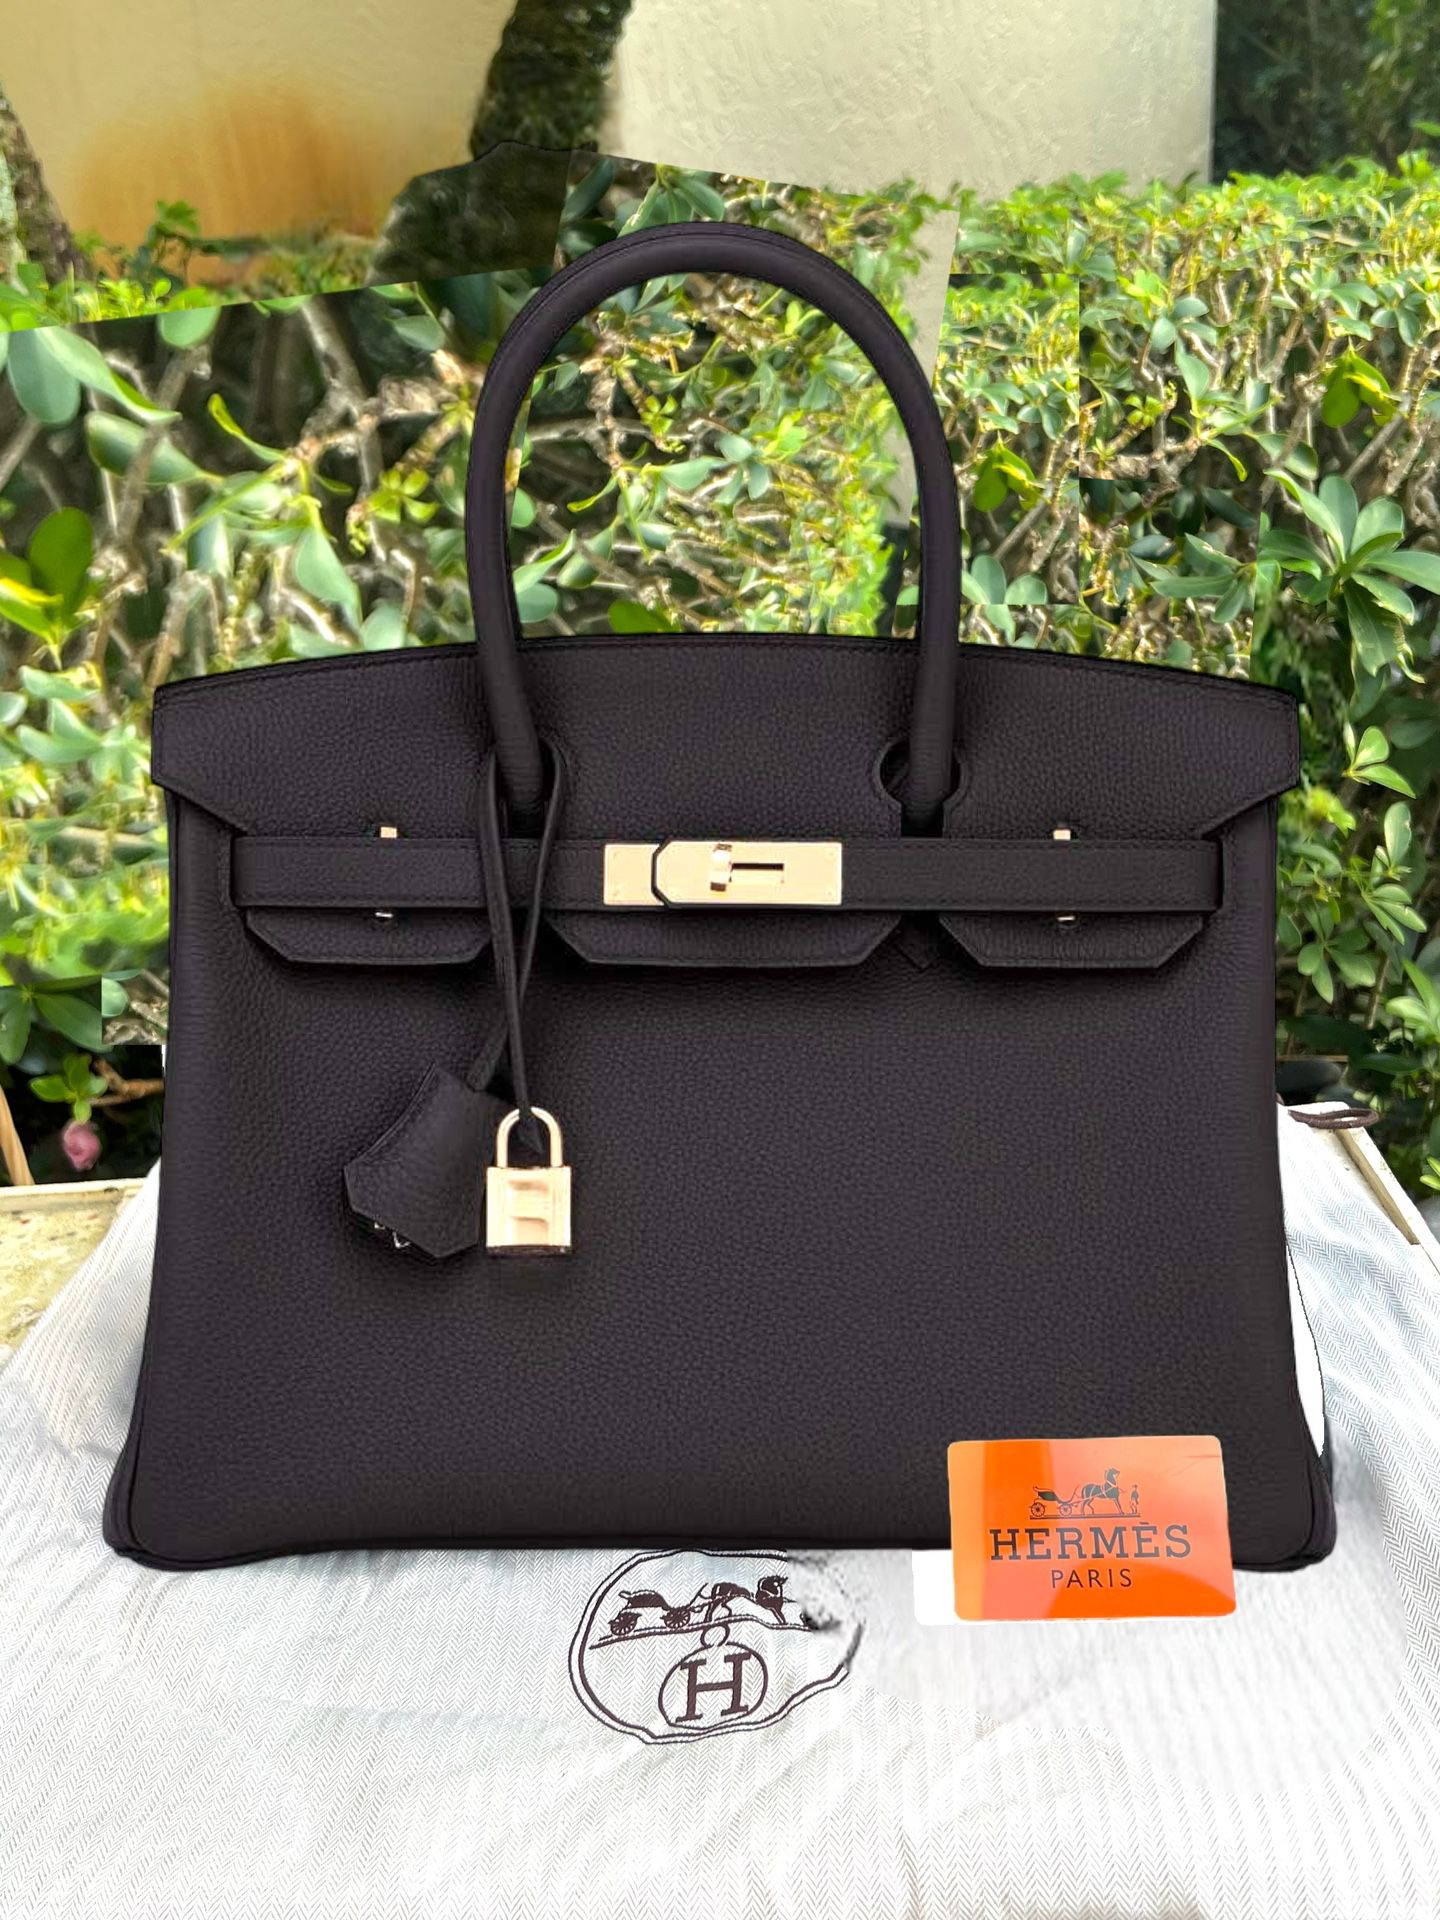 Hermes Classic Birkin 30cm Black Togo Rose Gold Hardware Bag U Stamp